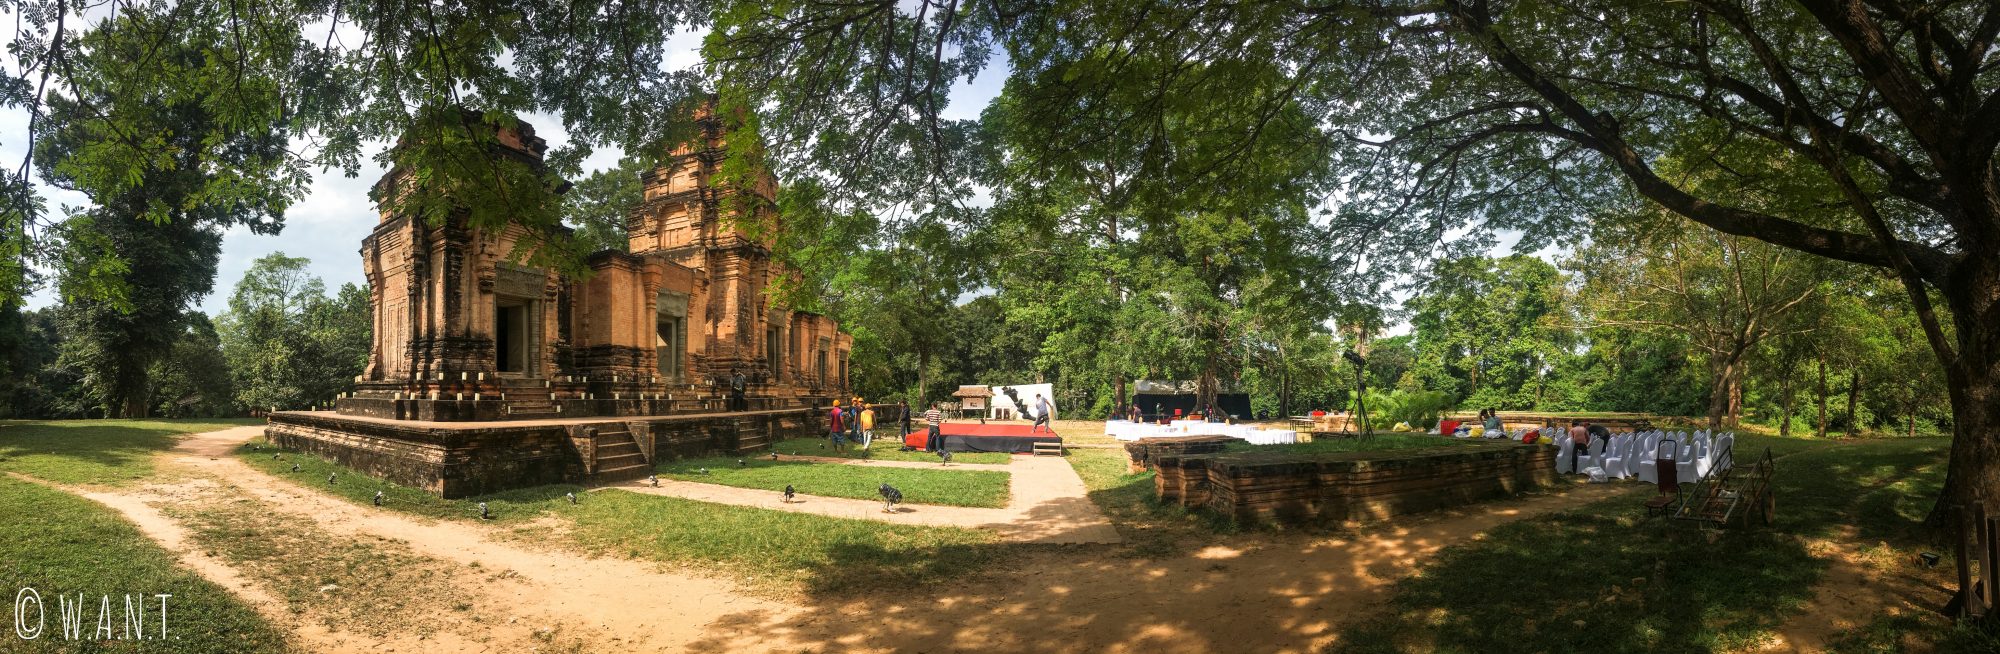 Panorama du temple Prasat Kravan sur le site archéologique d'Angkor